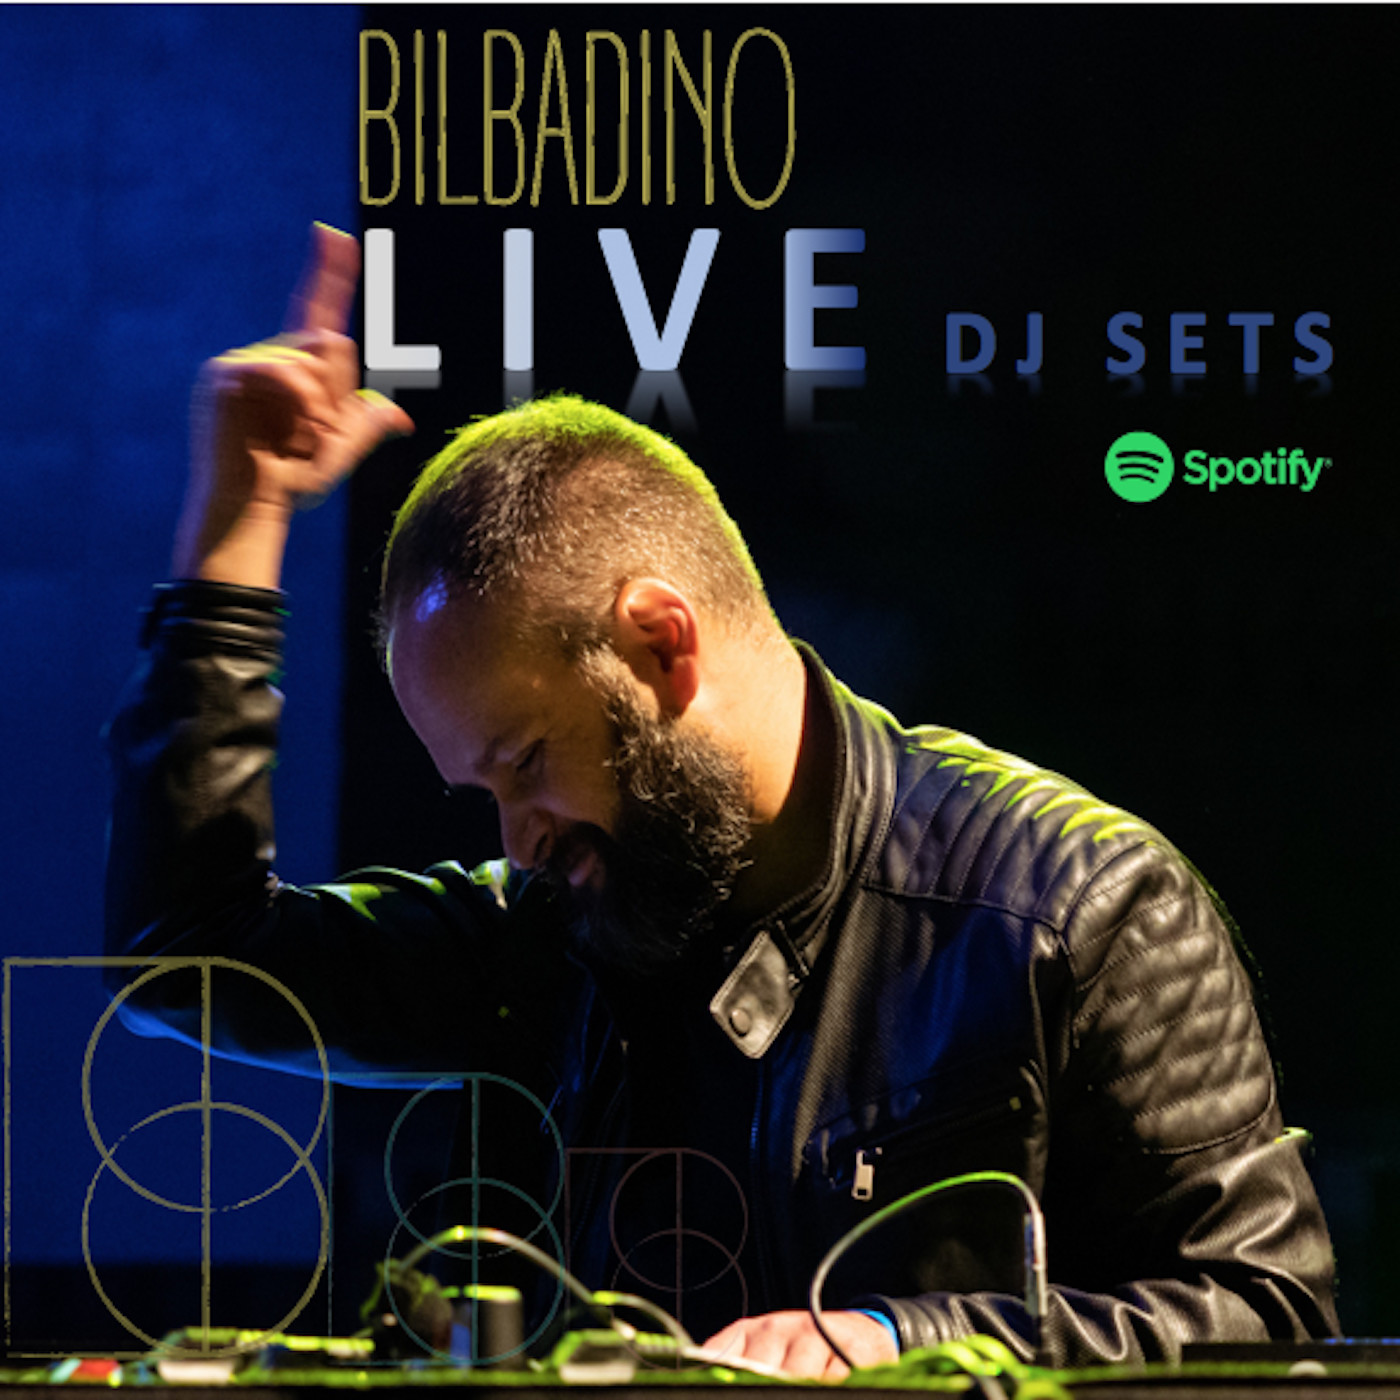 BILBADINO LIVE DJ SETS